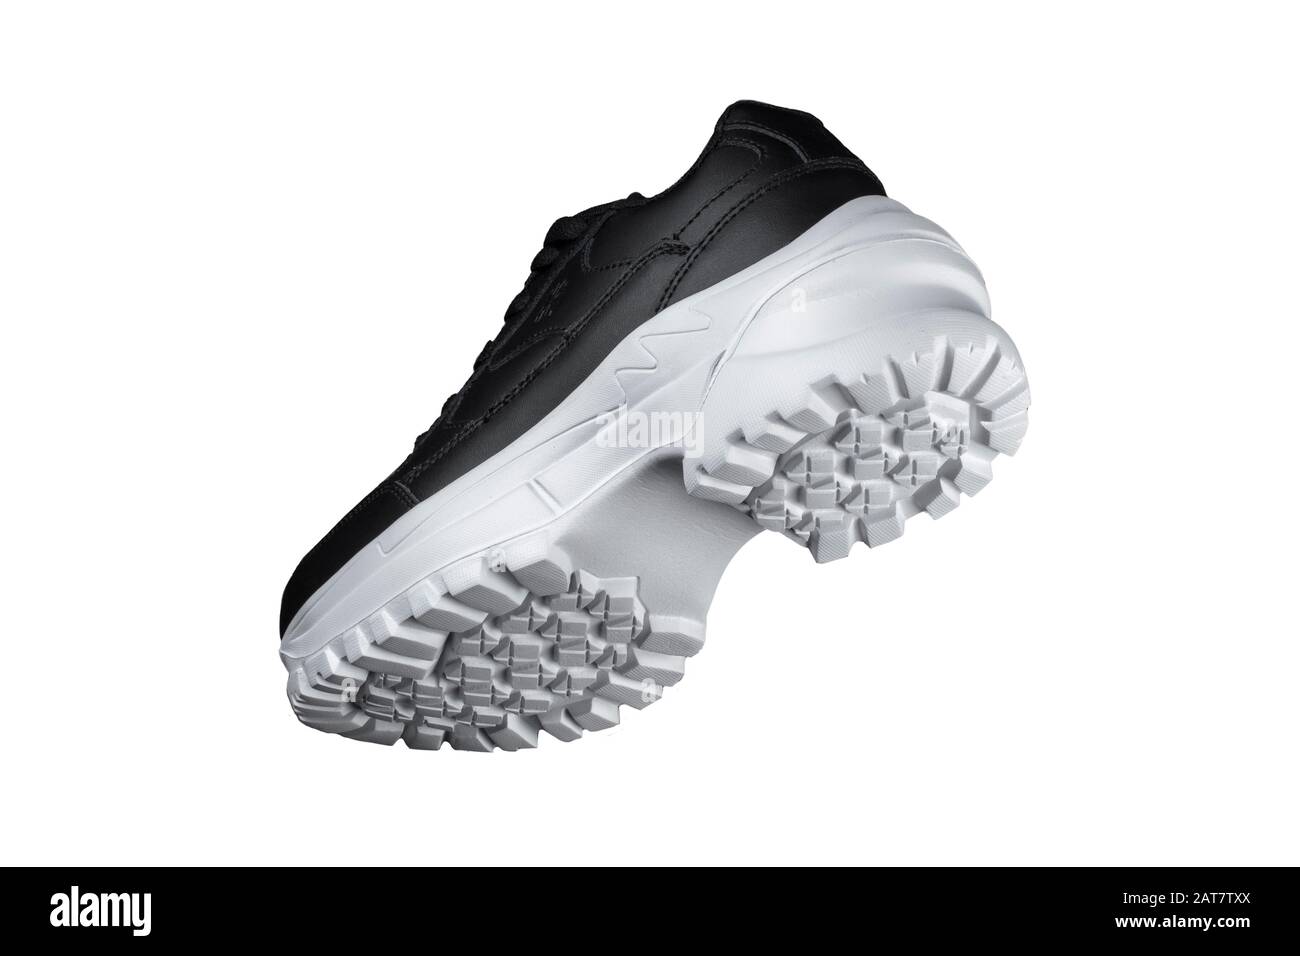 Sneaker noire avec semelle blanche. Chaussures de sport Photo Stock - Alamy